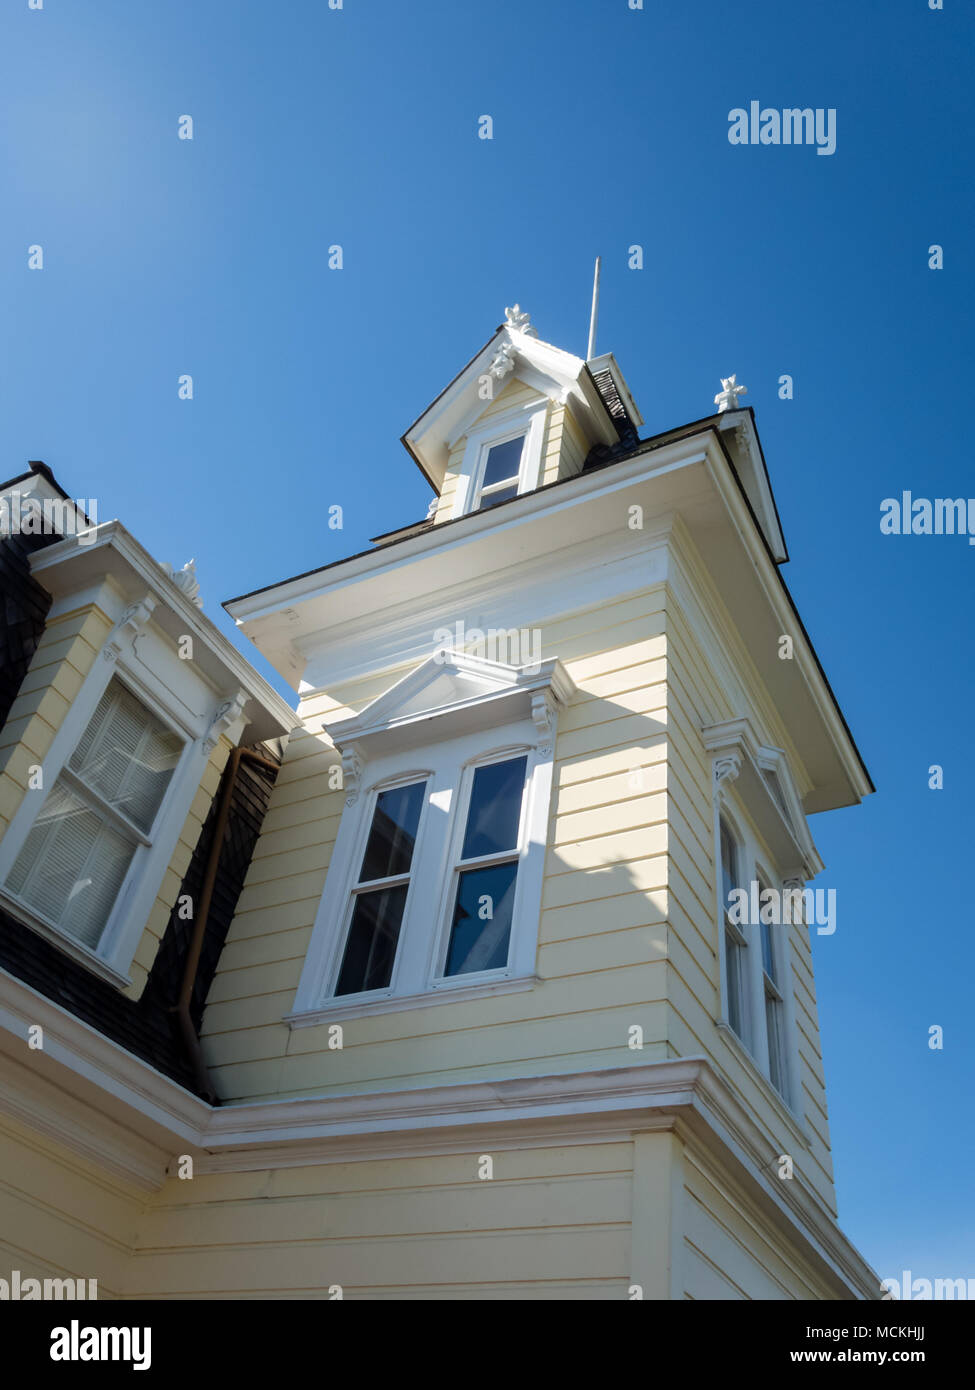 Dettaglio della parte superiore di una vedova a piedi balcone di un bianco in stile Victorian House Foto Stock